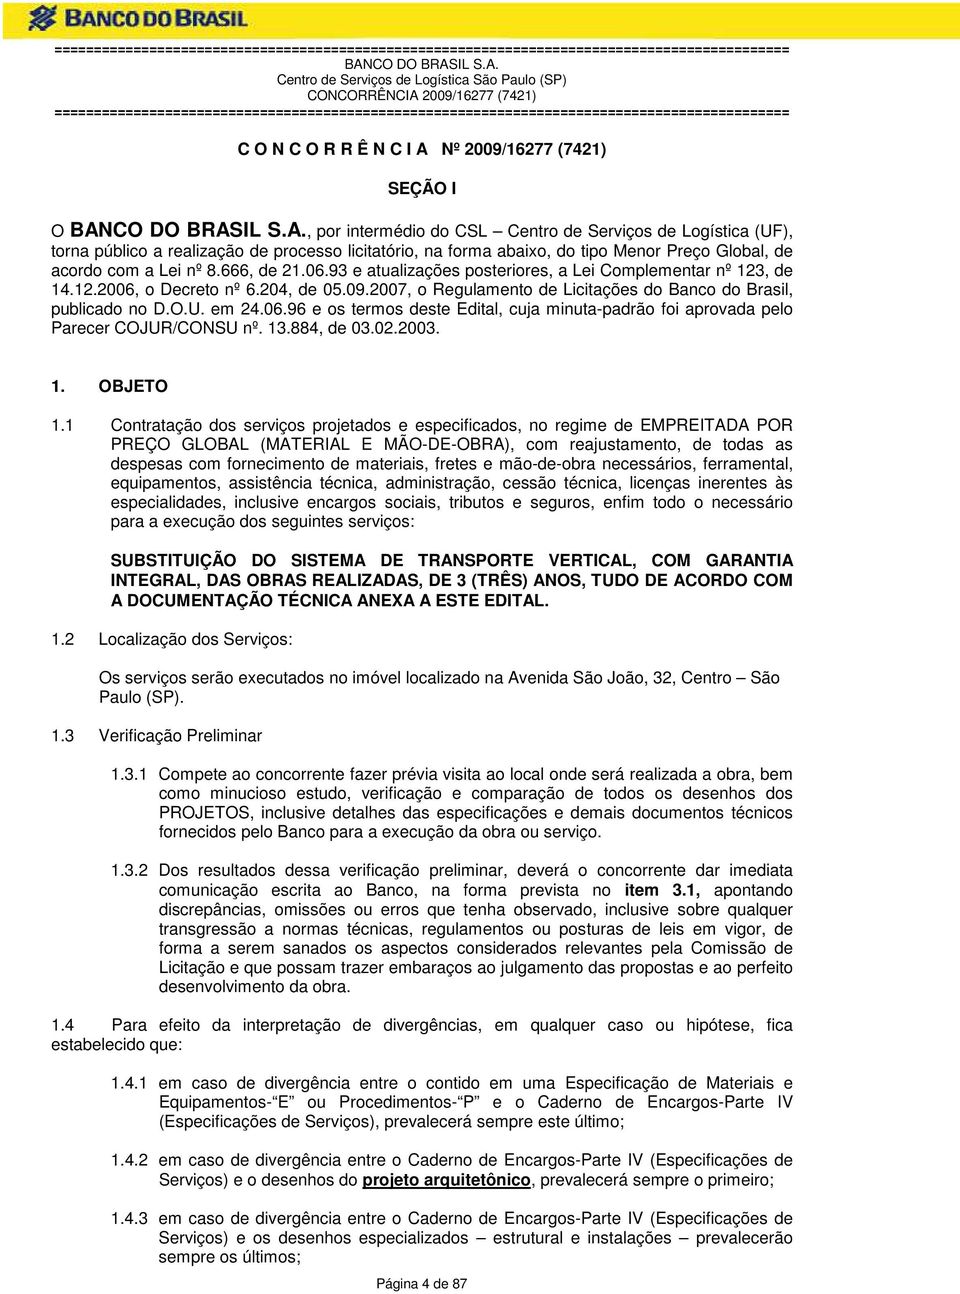 2007, o Regulamento de Licitações do Banco do Brasil, publicado no D.O.U. em 24.06.96 e os termos deste Edital, cuja minuta-padrão foi aprovada pelo Parecer COJUR/CONSU nº. 13.884, de 03.02.2003. 1. OBJETO 1.